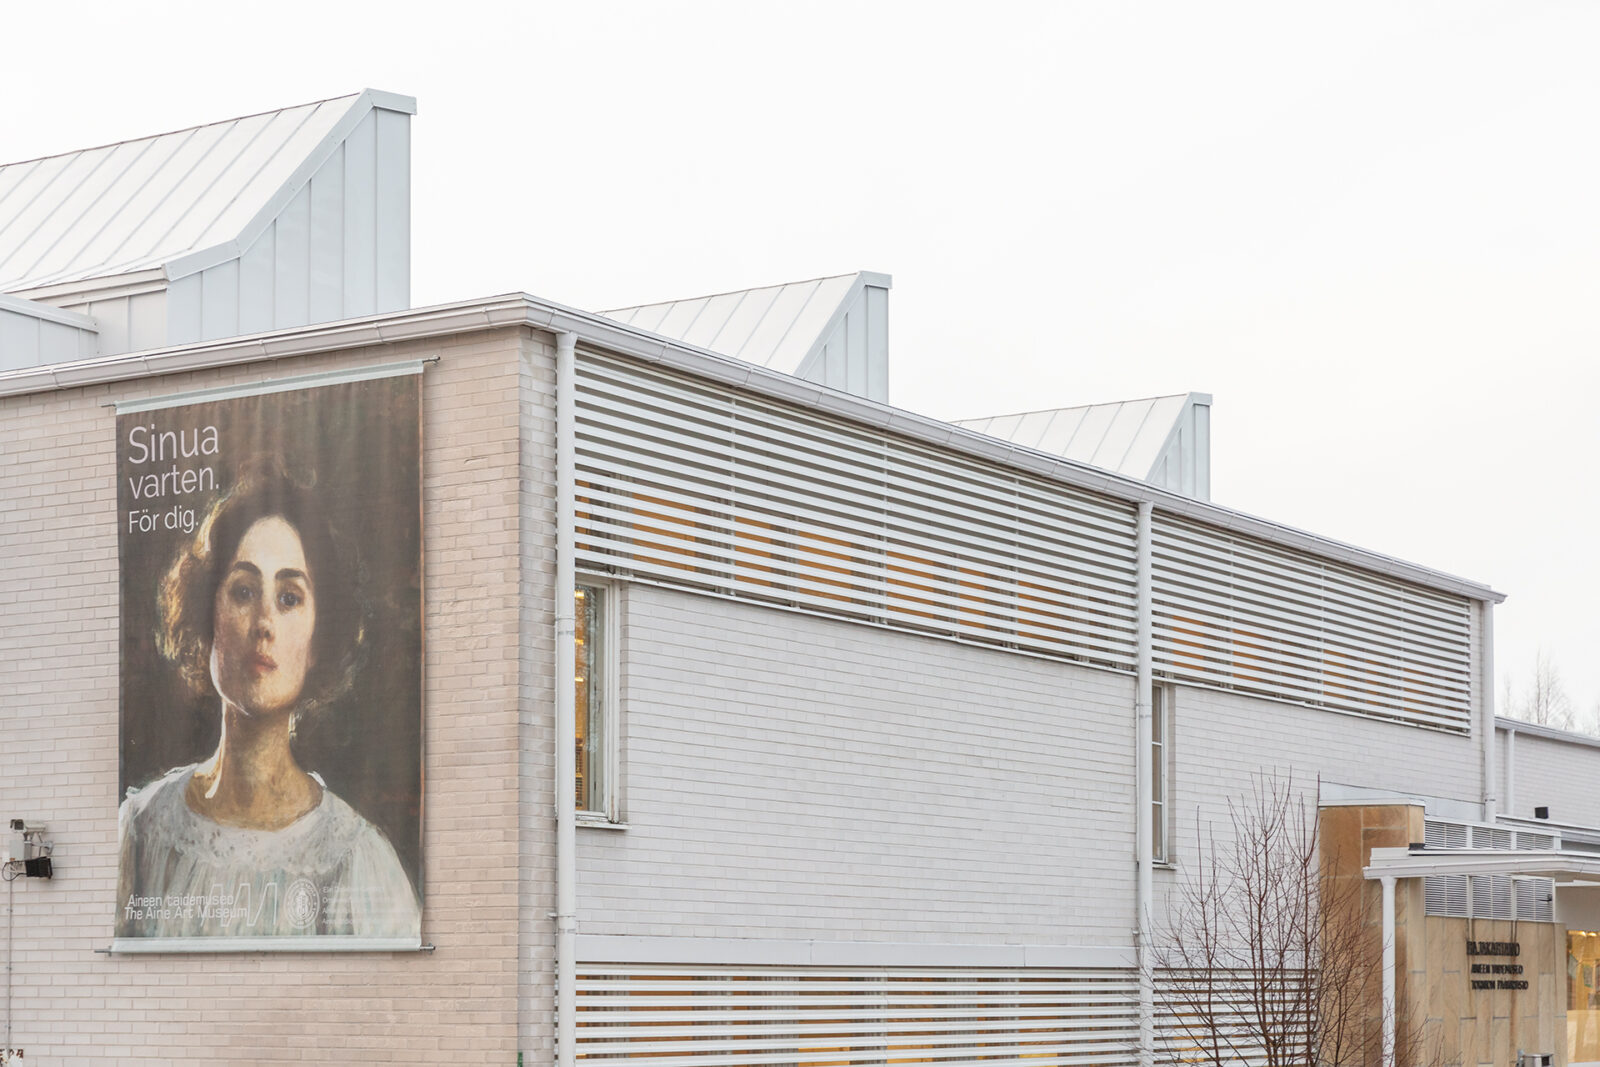 Valokuva museorakennuksen julkisivusta. Seinään on kiinnitetty suuri mainoslakana, jossa on taiteilija Elin Danielson-Gambogin omakuva ja teksti "Sinua varten. För dig."